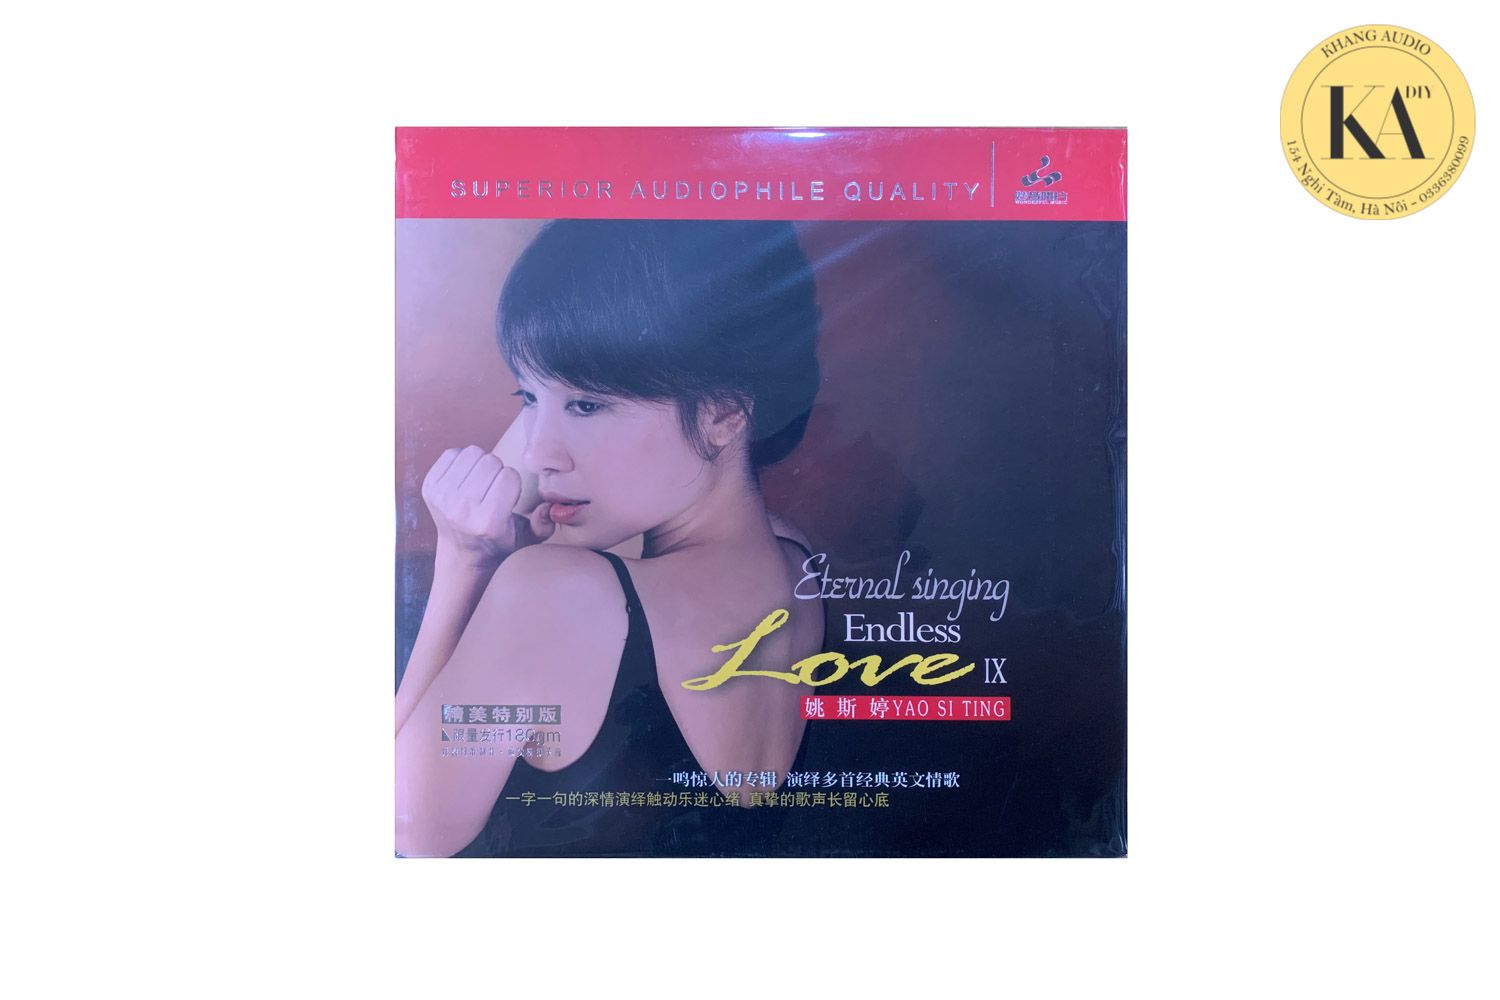 Đĩa than LP nhạc quốc tế Eternal Singing Endless Love IX - Yao SiTing Khang Audio 0336380099